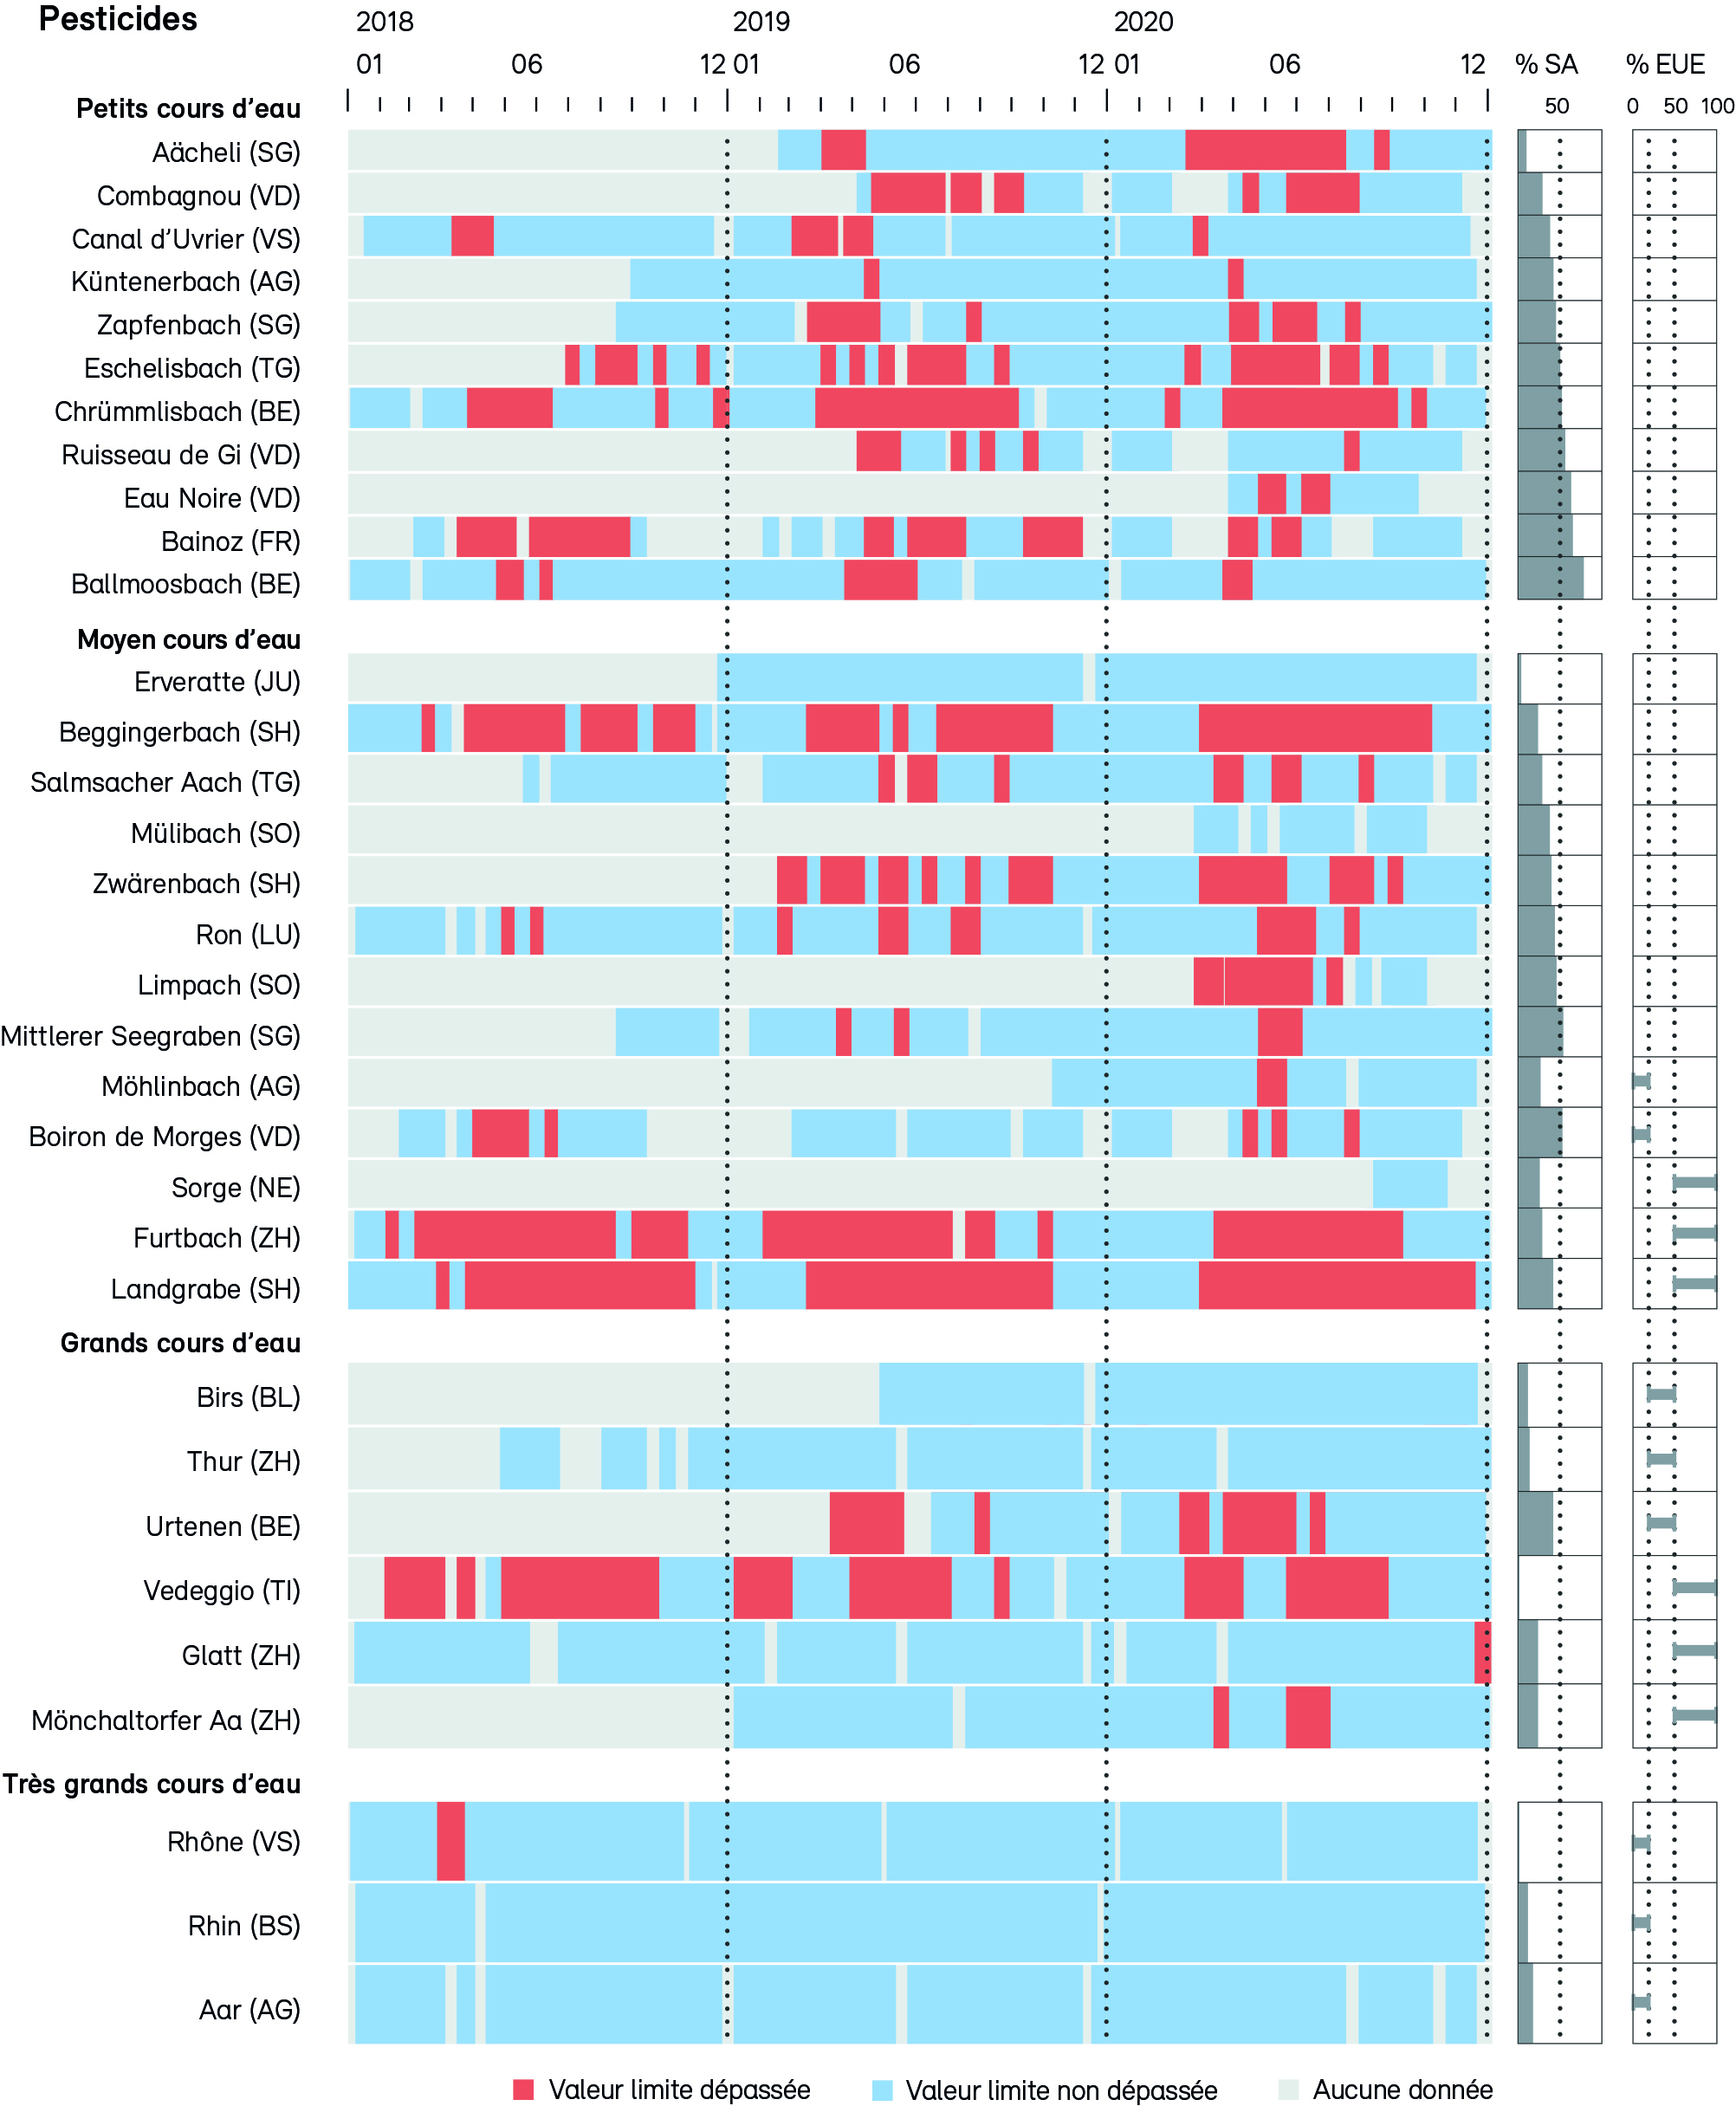 Graphiques chronologiques illustrent des dépassements de valeurs limites écotoxicologiques des pesticides